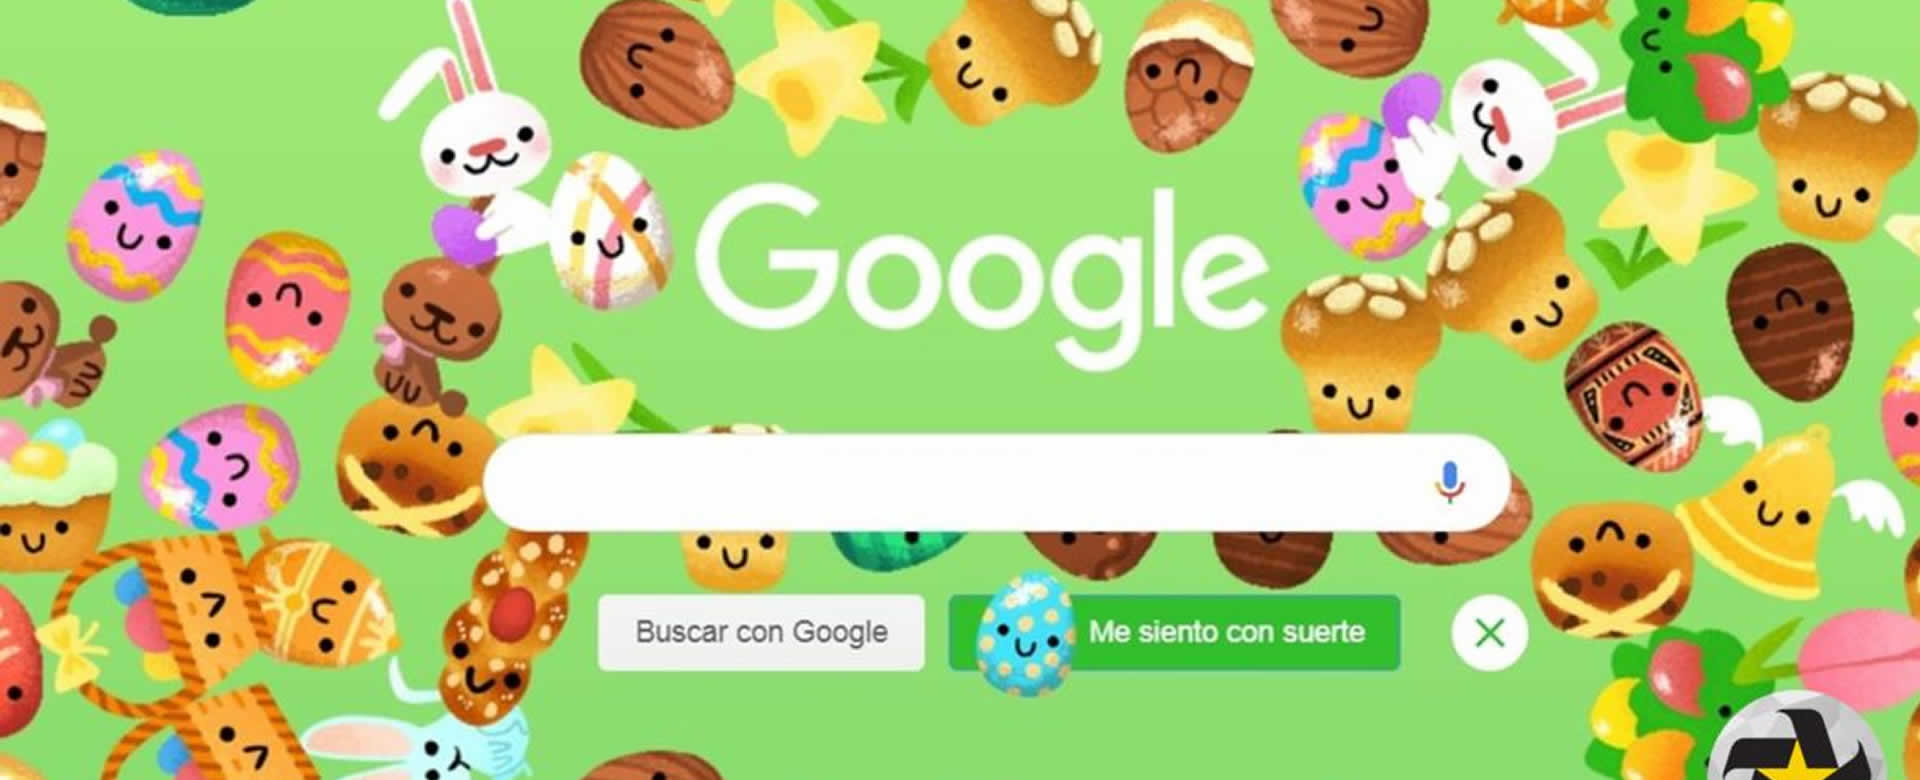 Google celebra la pascua con una lluvia de huevos, dulces y conejos